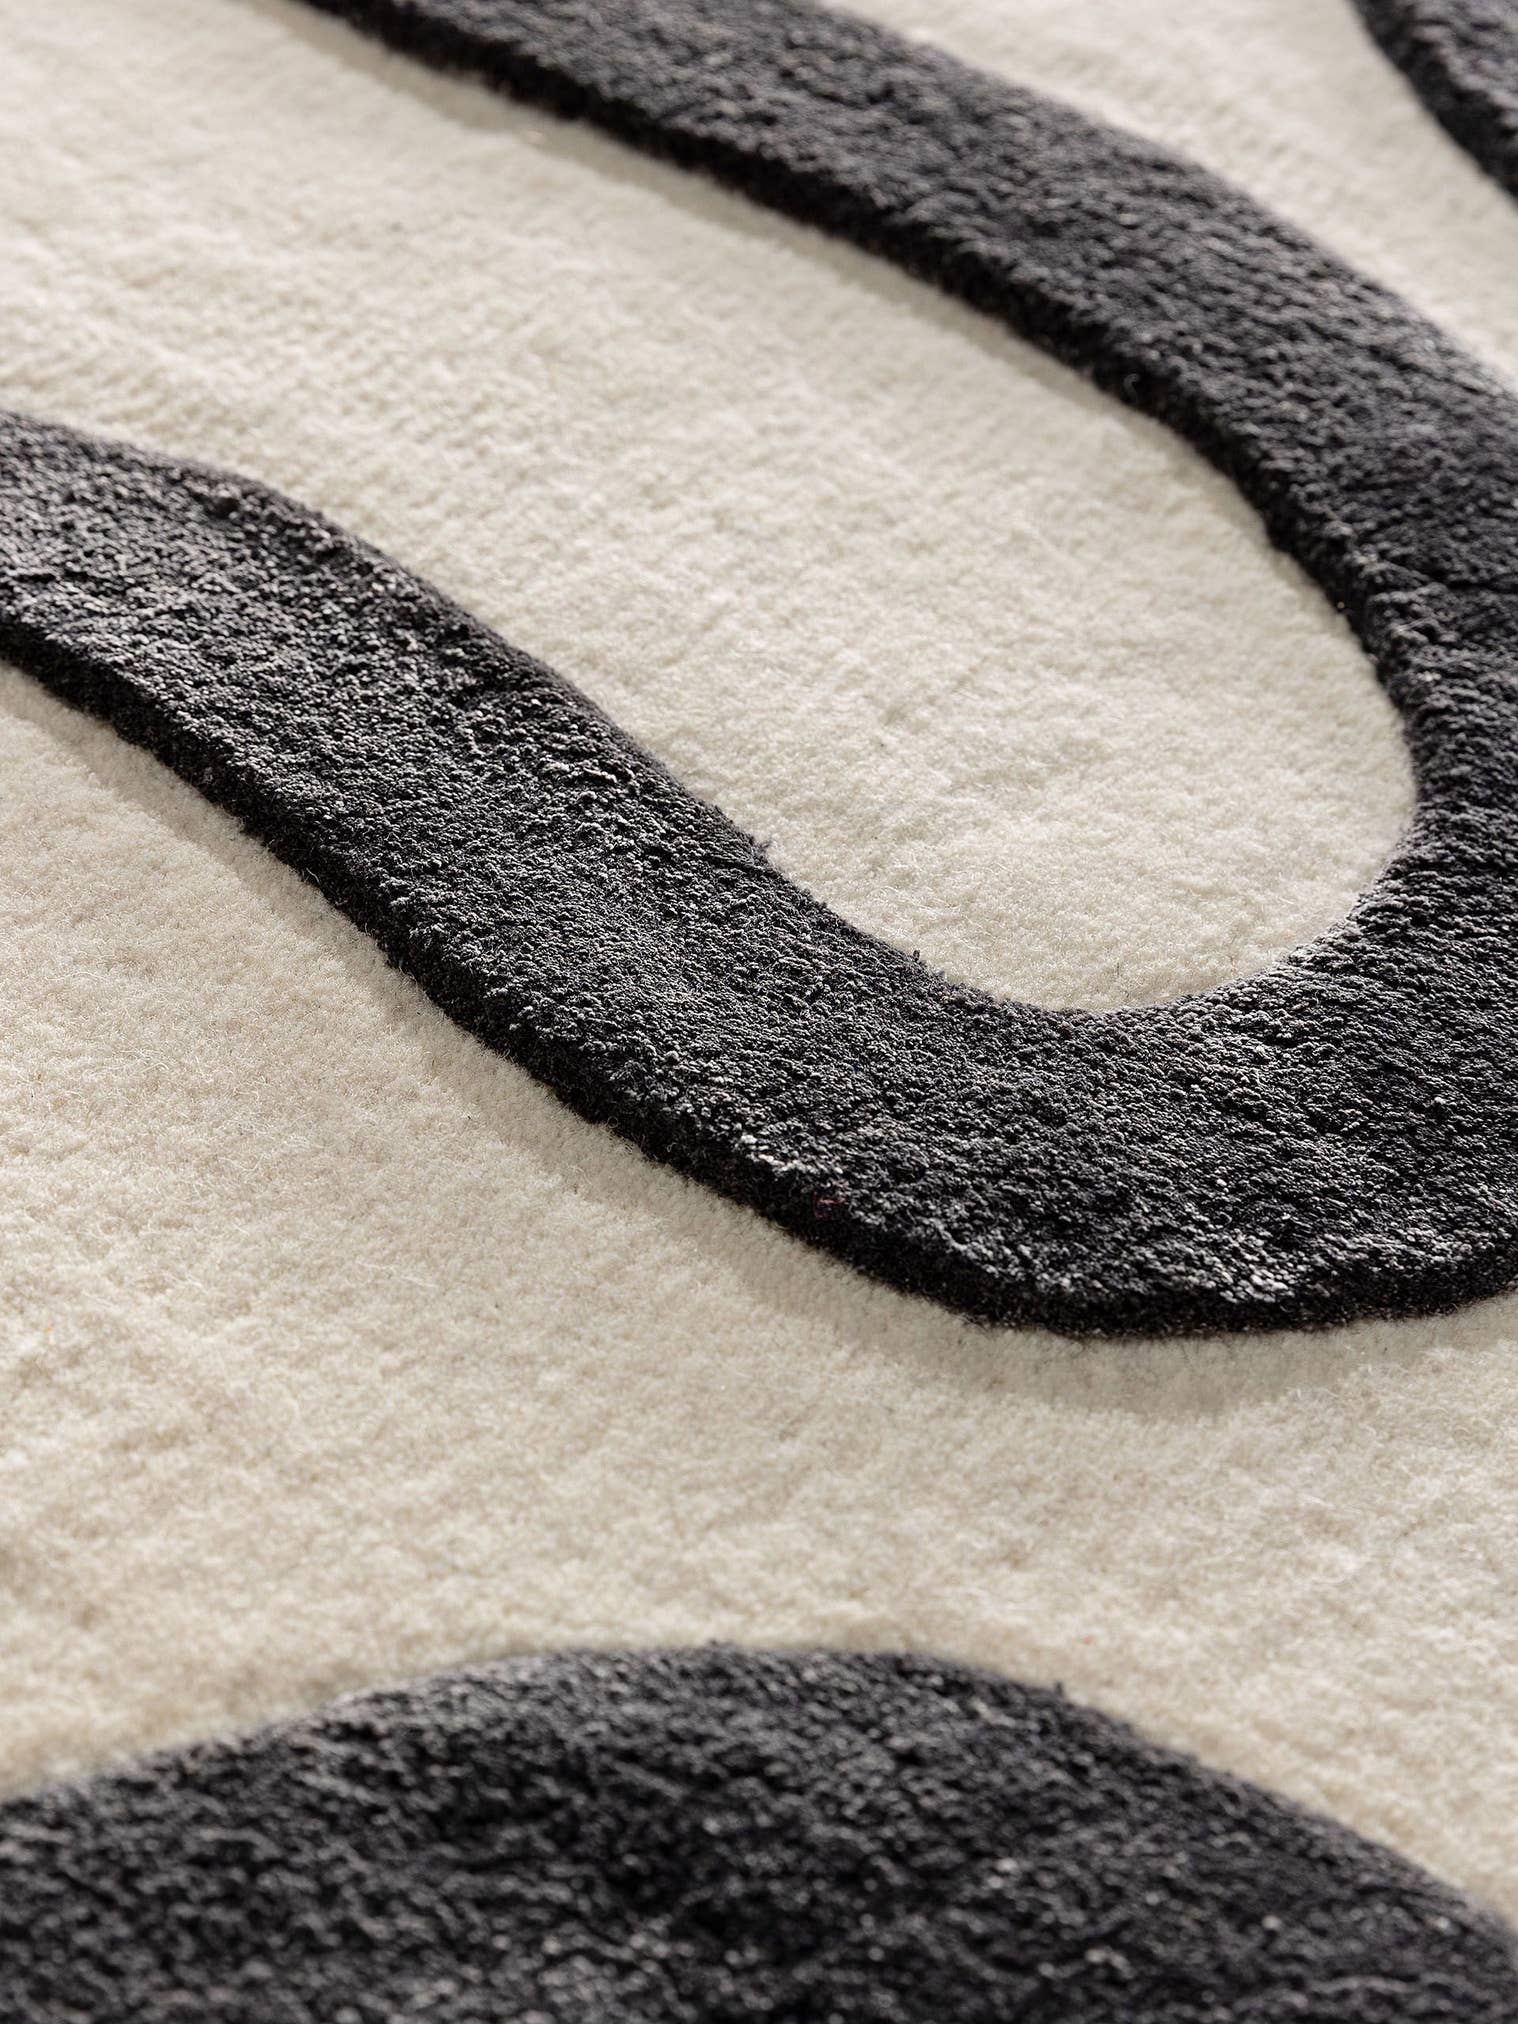 Teppich aus 75% Wolle, 25% Lyocell (TENCEL™) in Schwarz/Weiß mit 6 bis 10 mm hohem Flor von benuta Finest